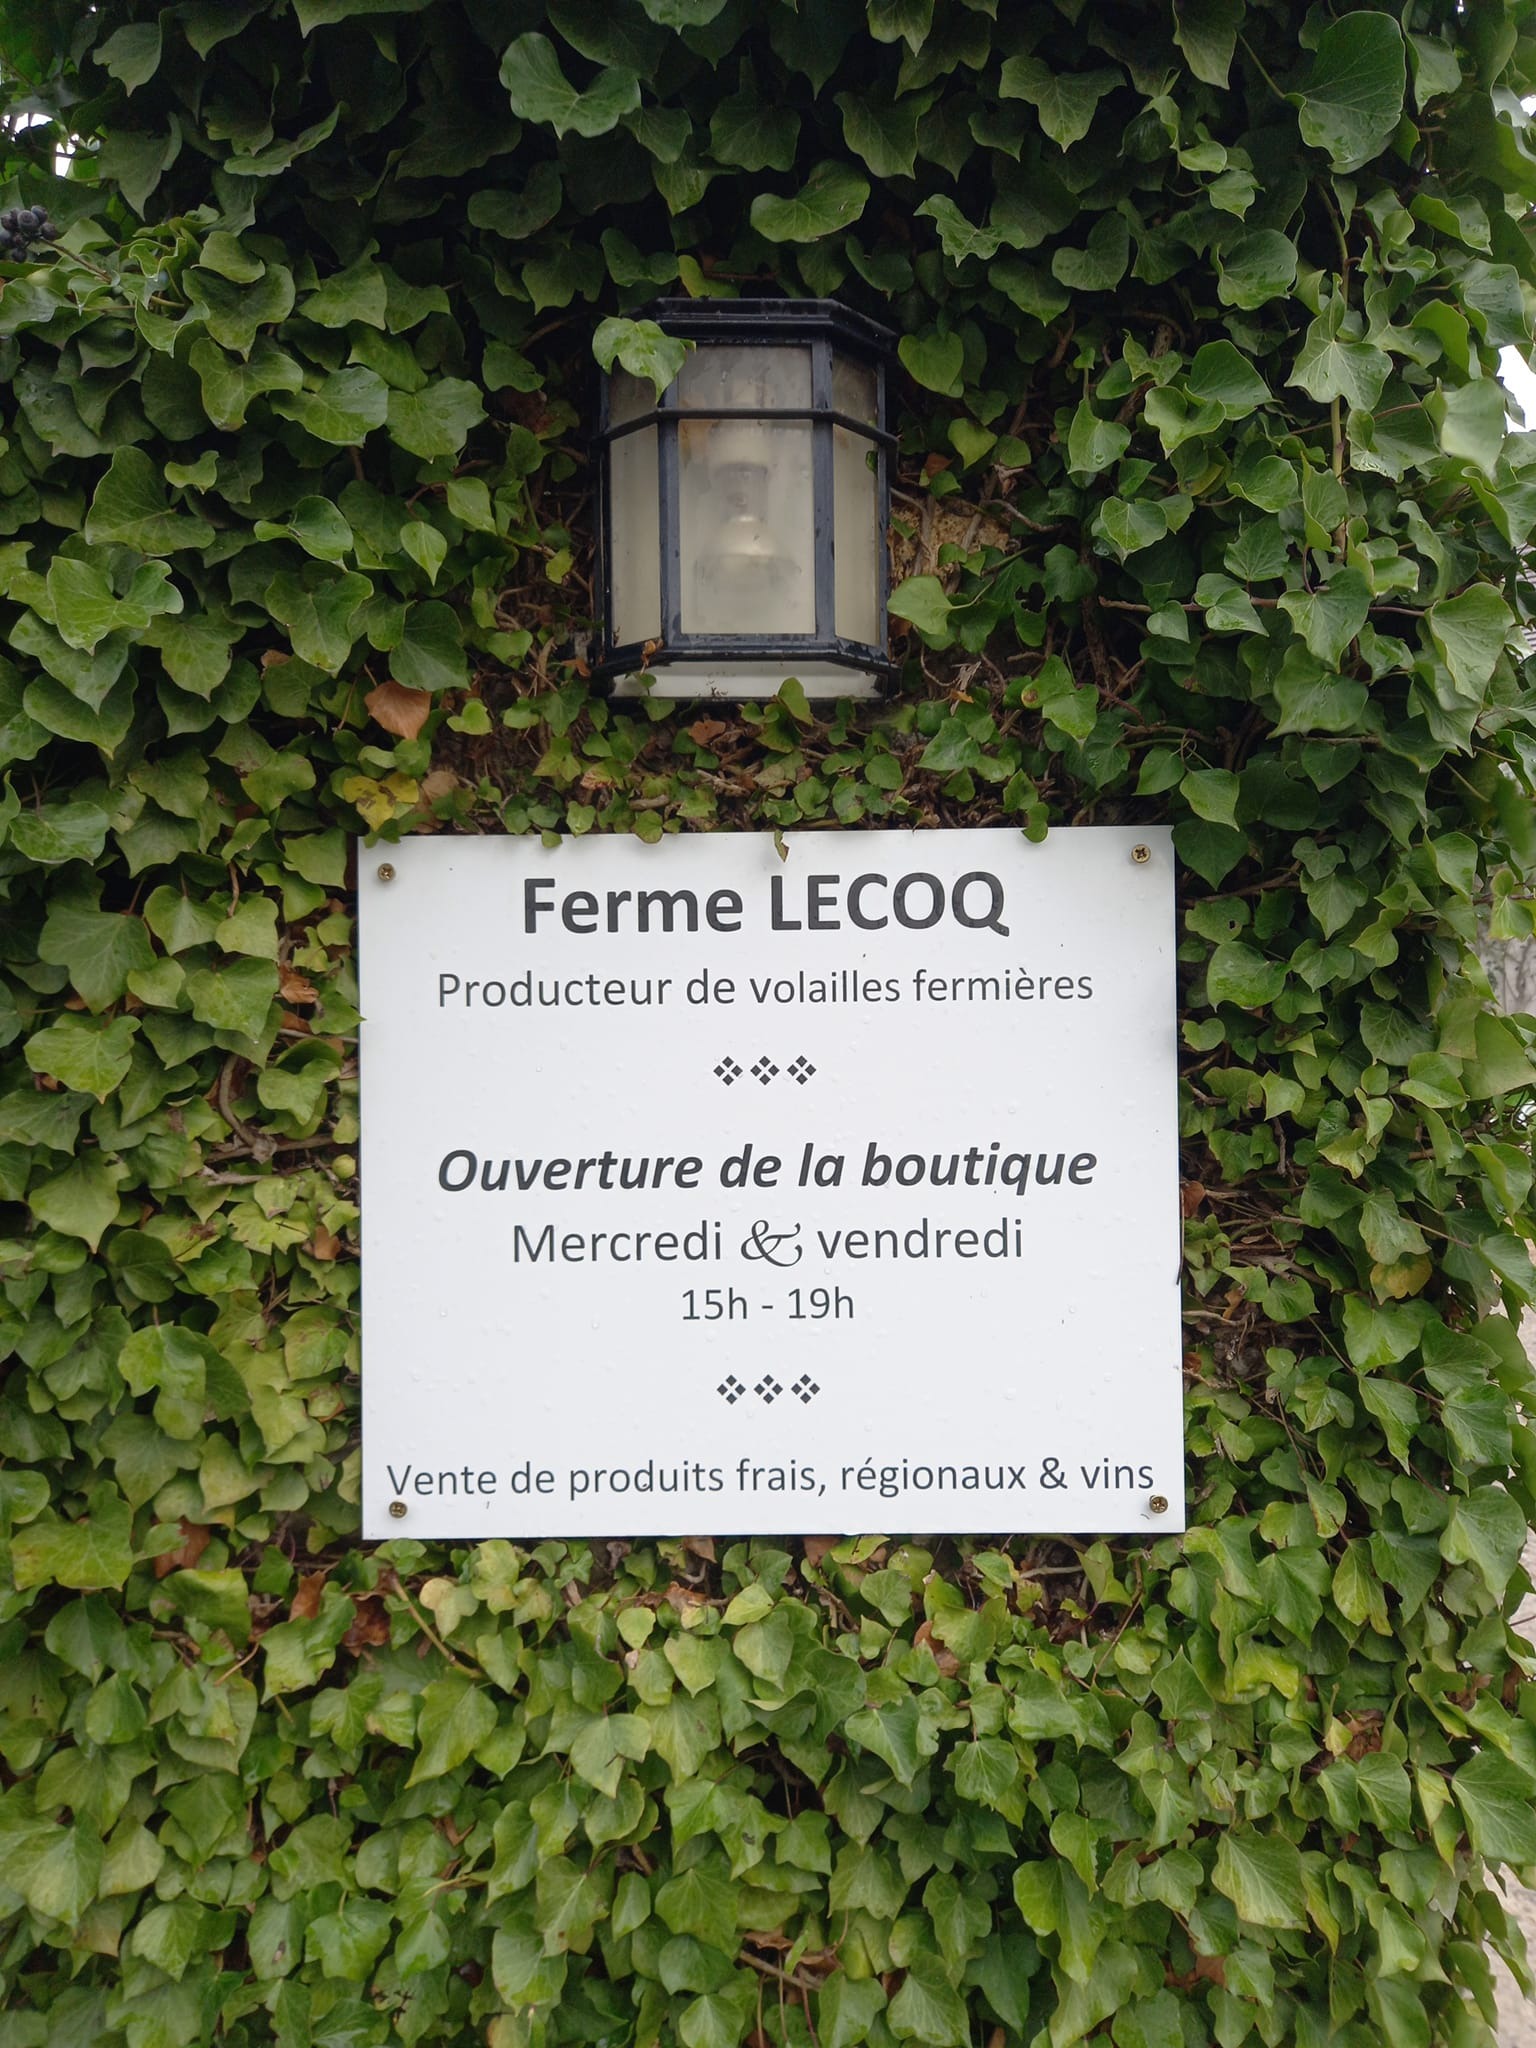 Lecoq Farm